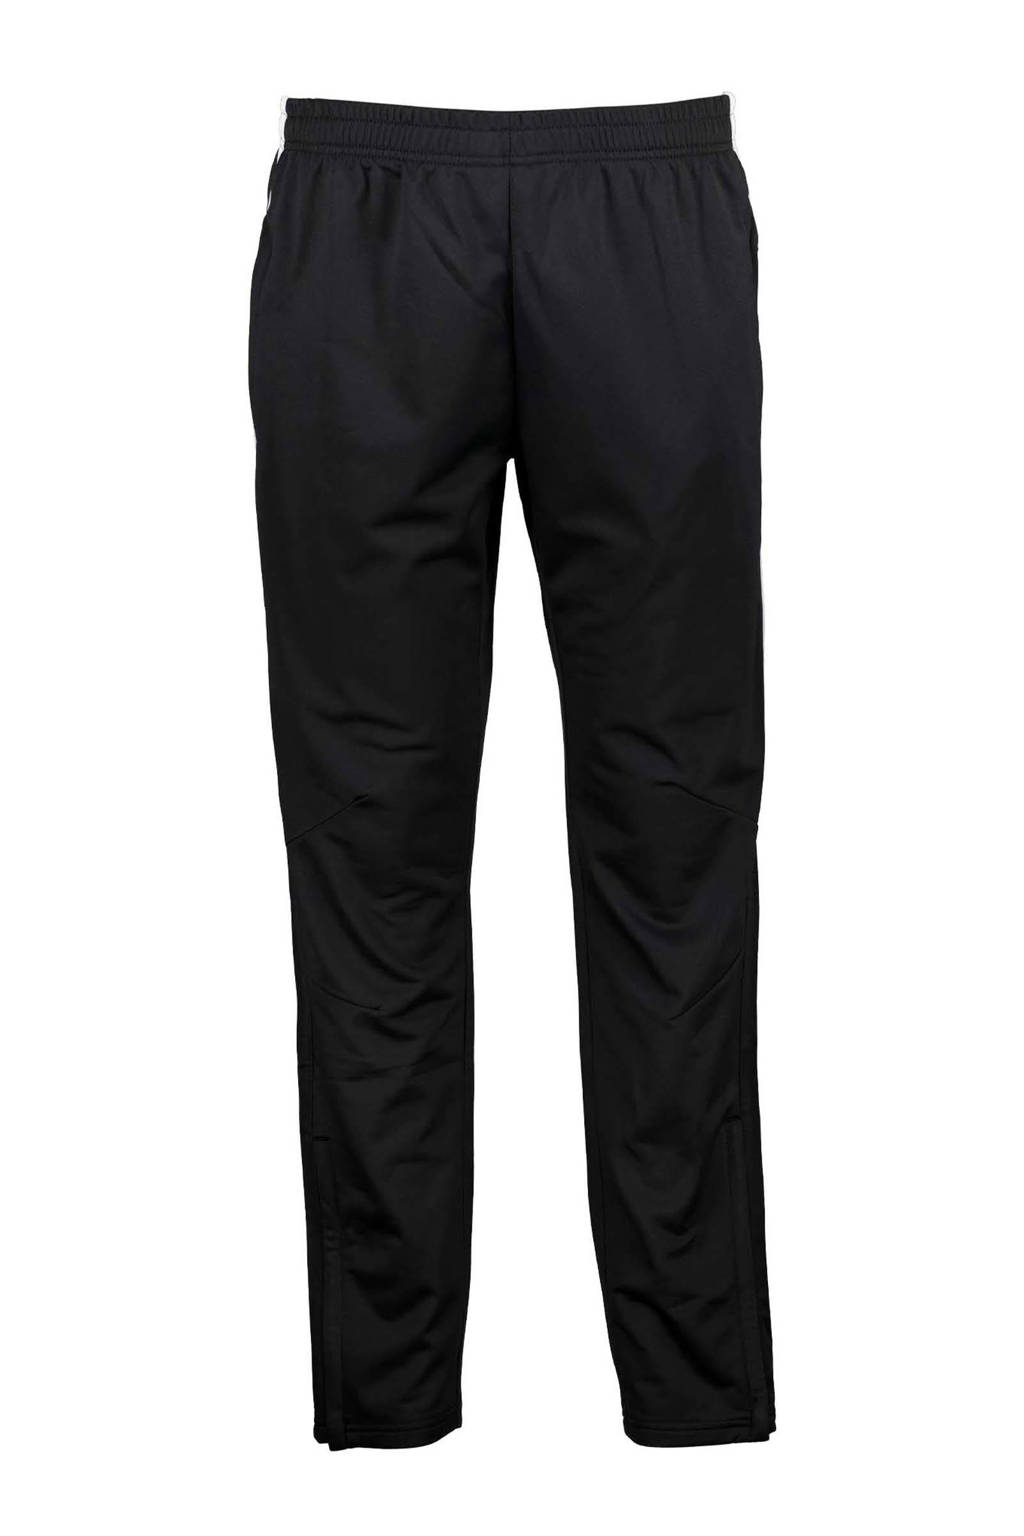 Zwart en witte heren Scapino Dutchy trainingsbroek van polyester met regular fit en elastische tailleband met koord